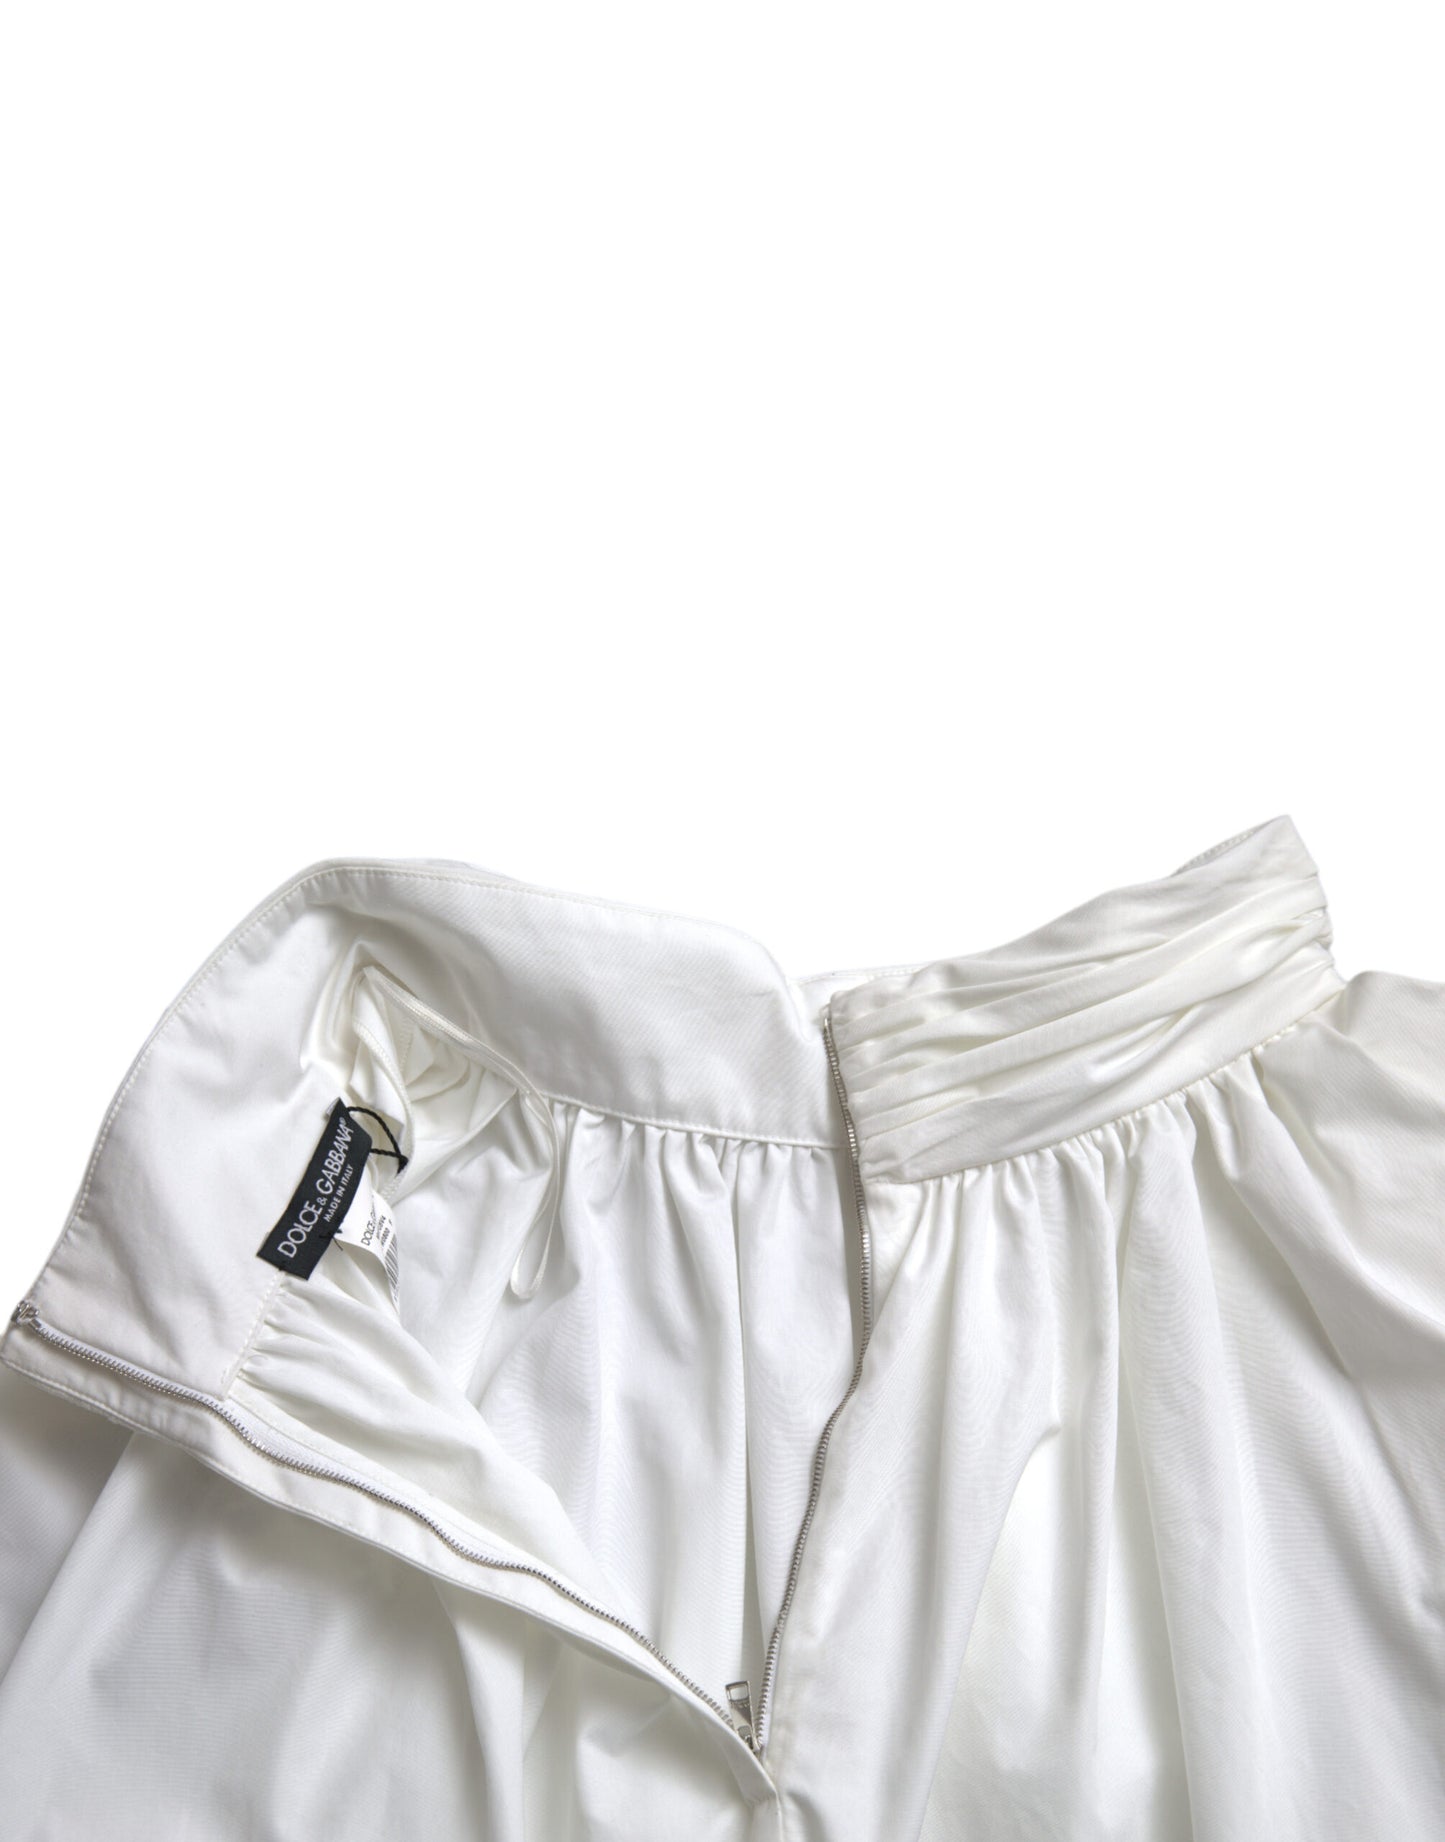 White Cotton High Waist Pencil Cut Maxi Skirt